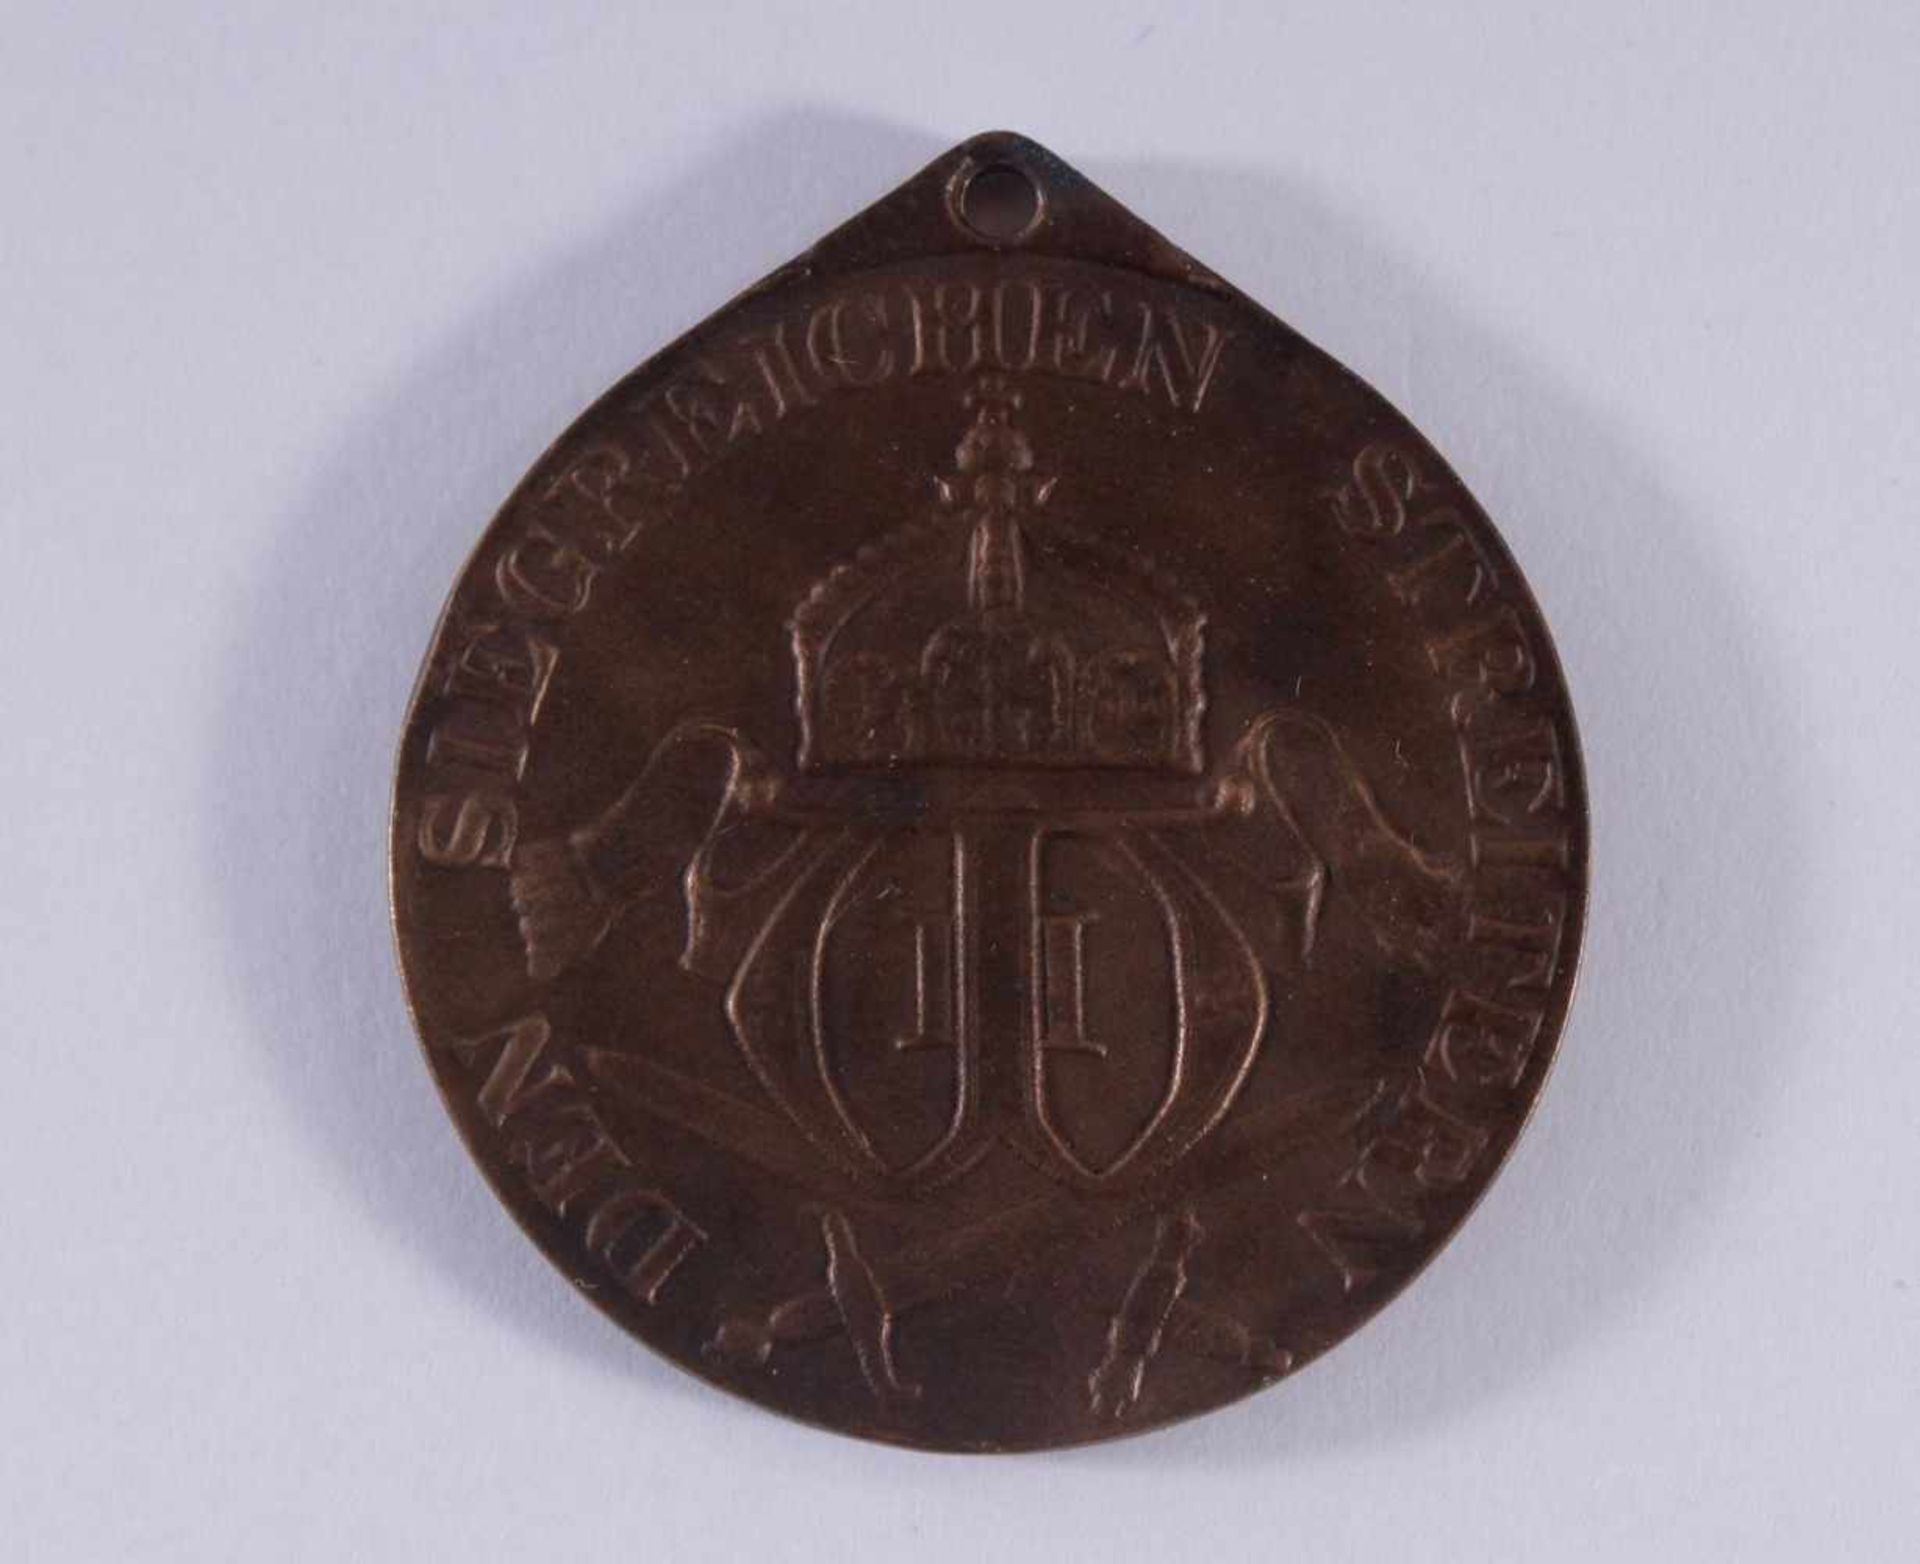 Medaille, Preußen, Deutsch-Südwestafrika 1904-1906DEN SIEGREICHEN STREITERN, Durchmesser ca. 3,2 cm, - Image 2 of 2